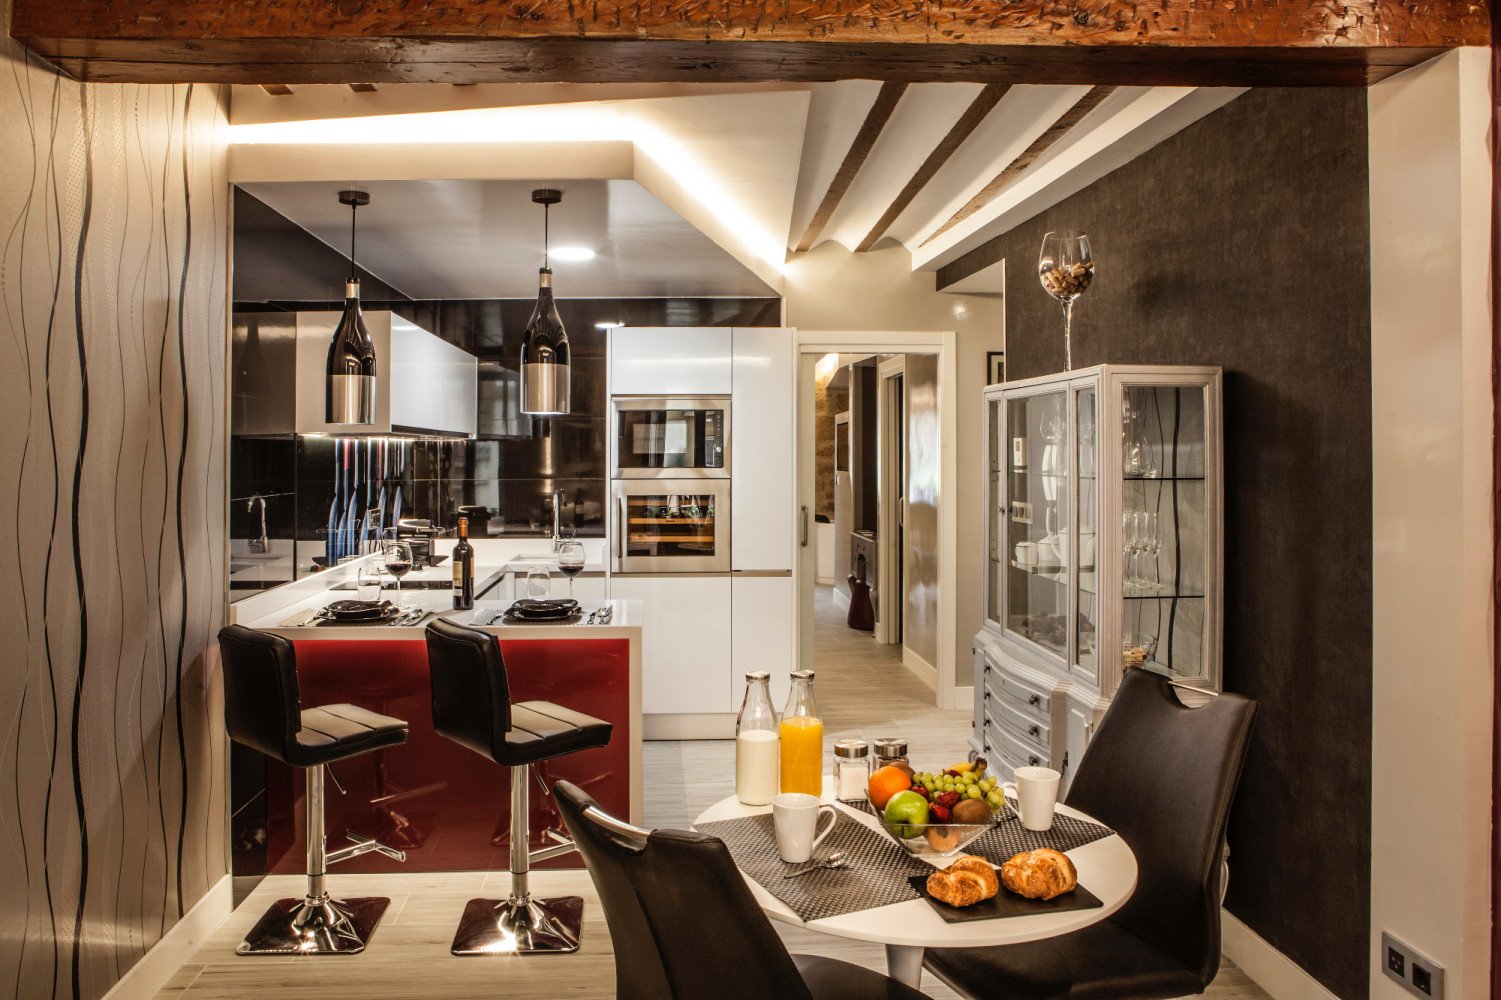 El millor allotjament a La Rioja segons Booking és un aparthotel a molt bon preu: puntuació de 9,8